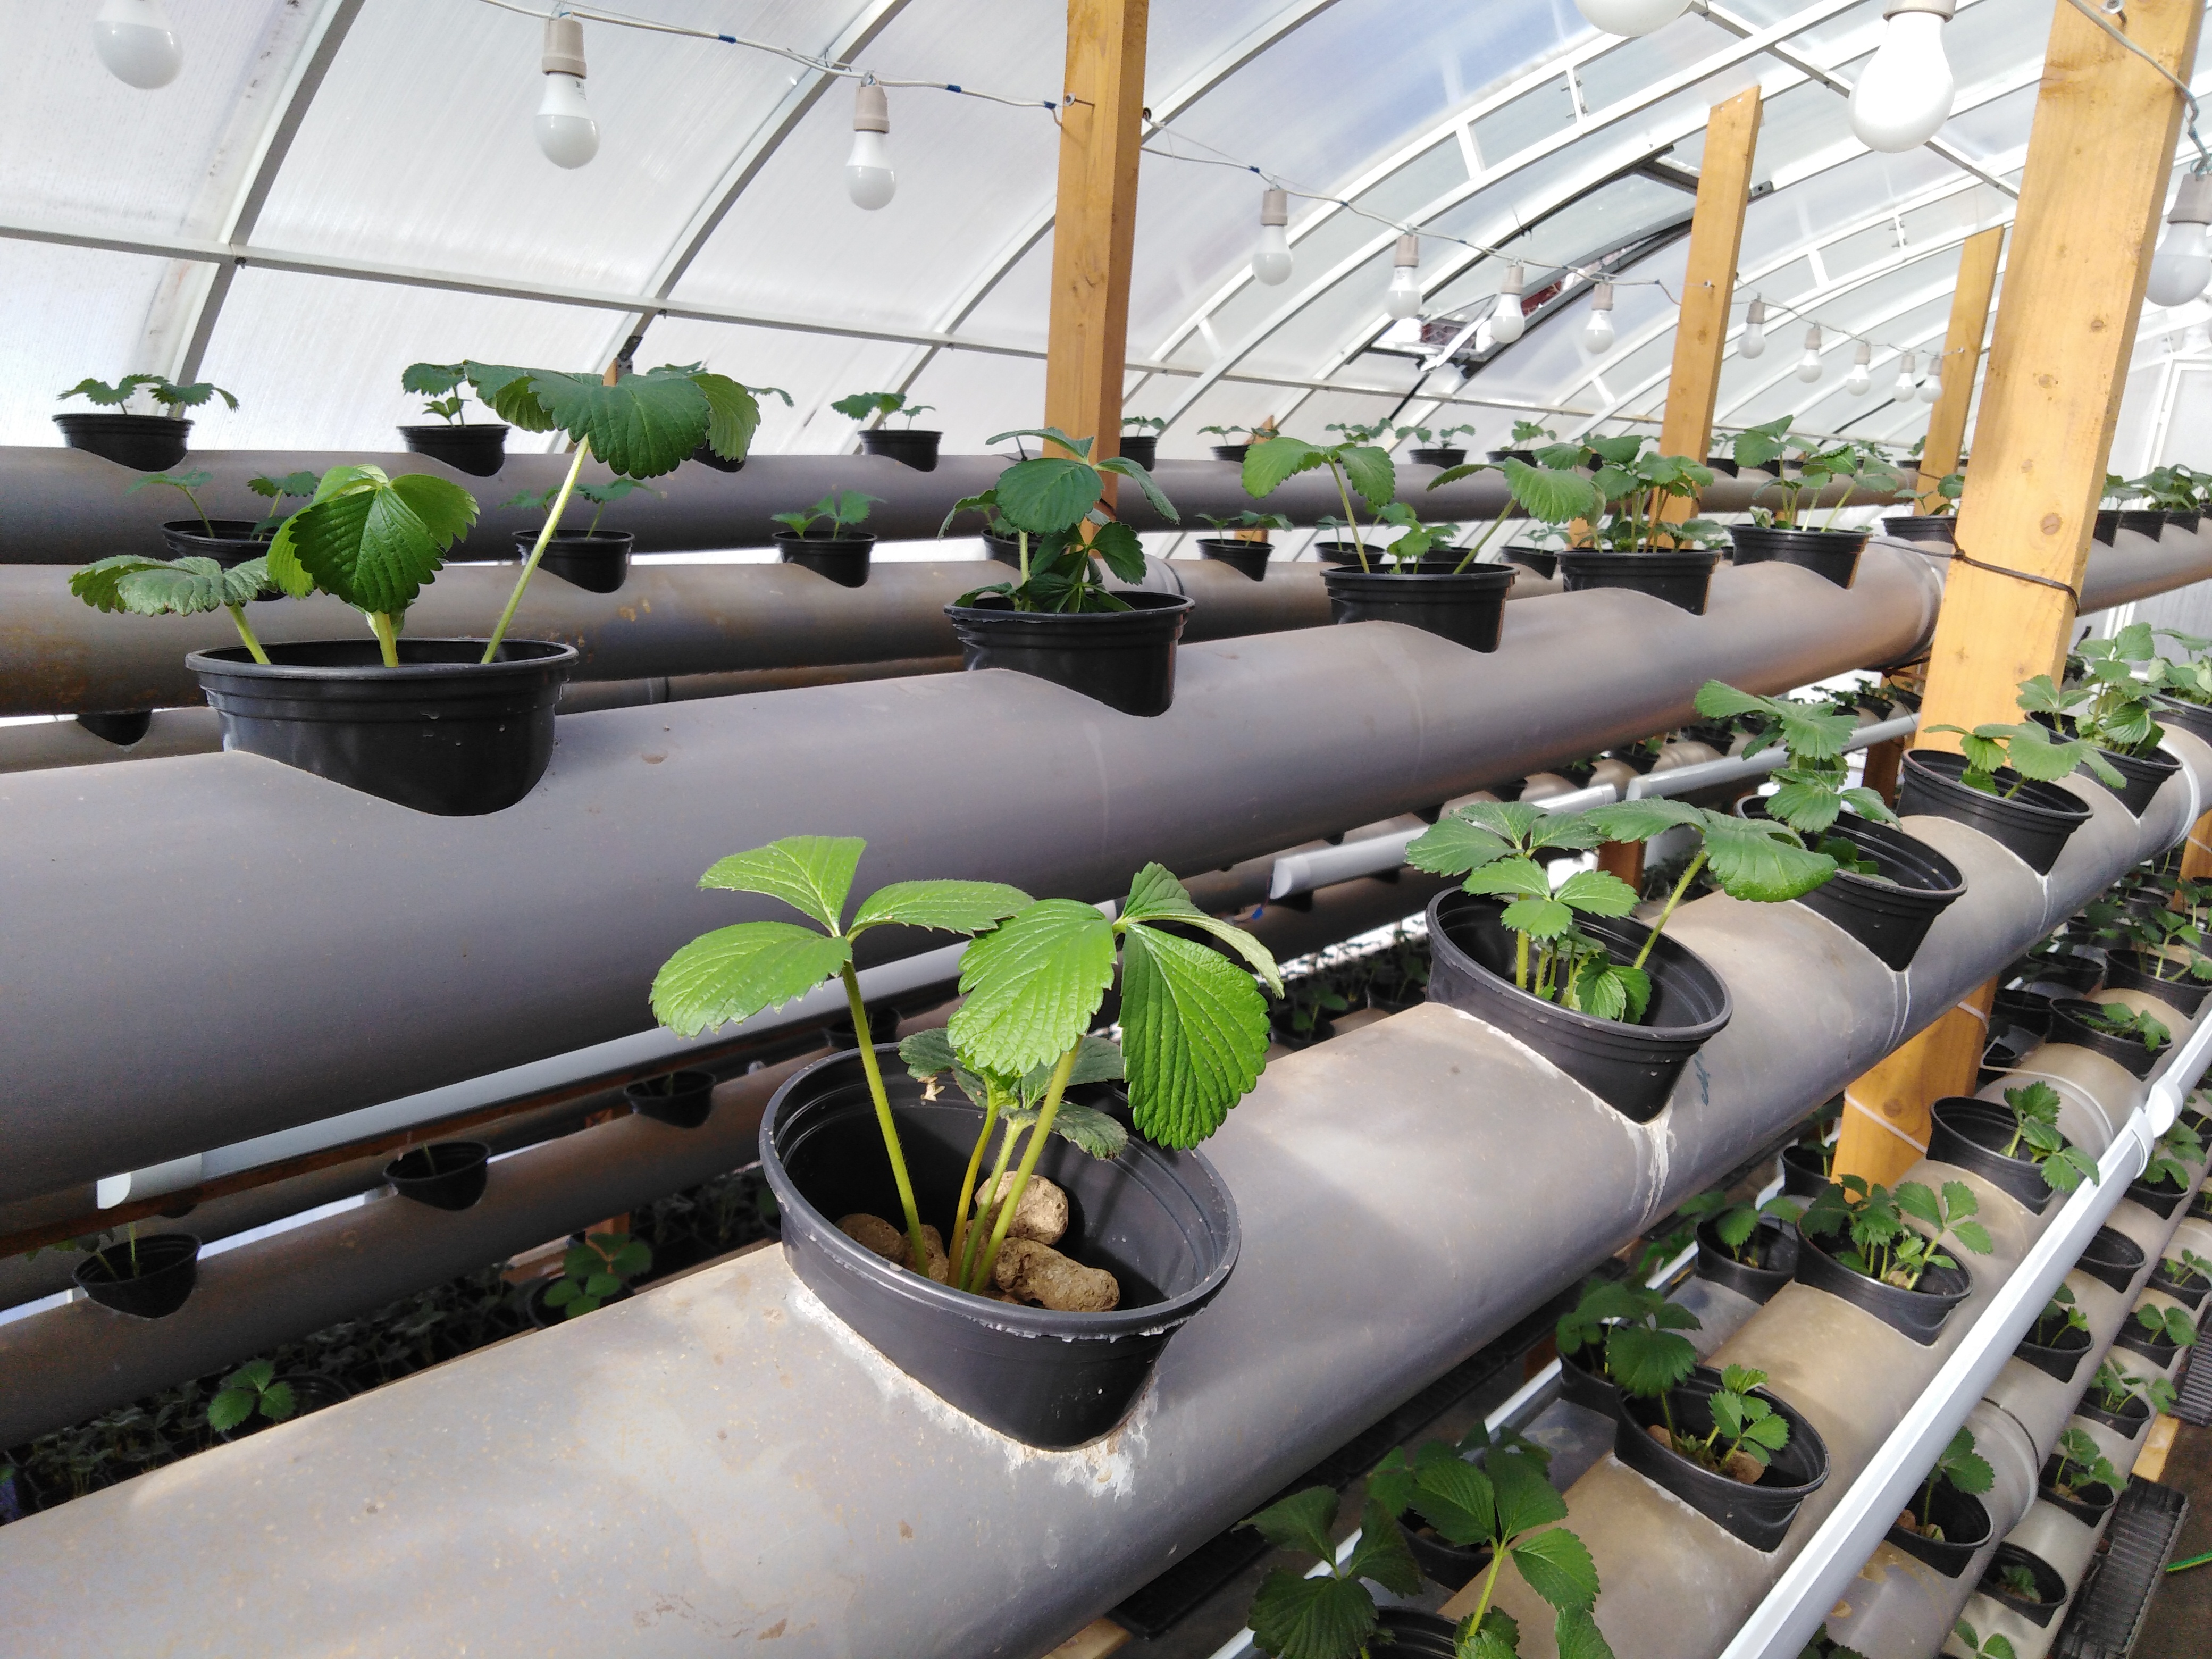 Выращивание клубники в теплице круглый год: технология и отзывы